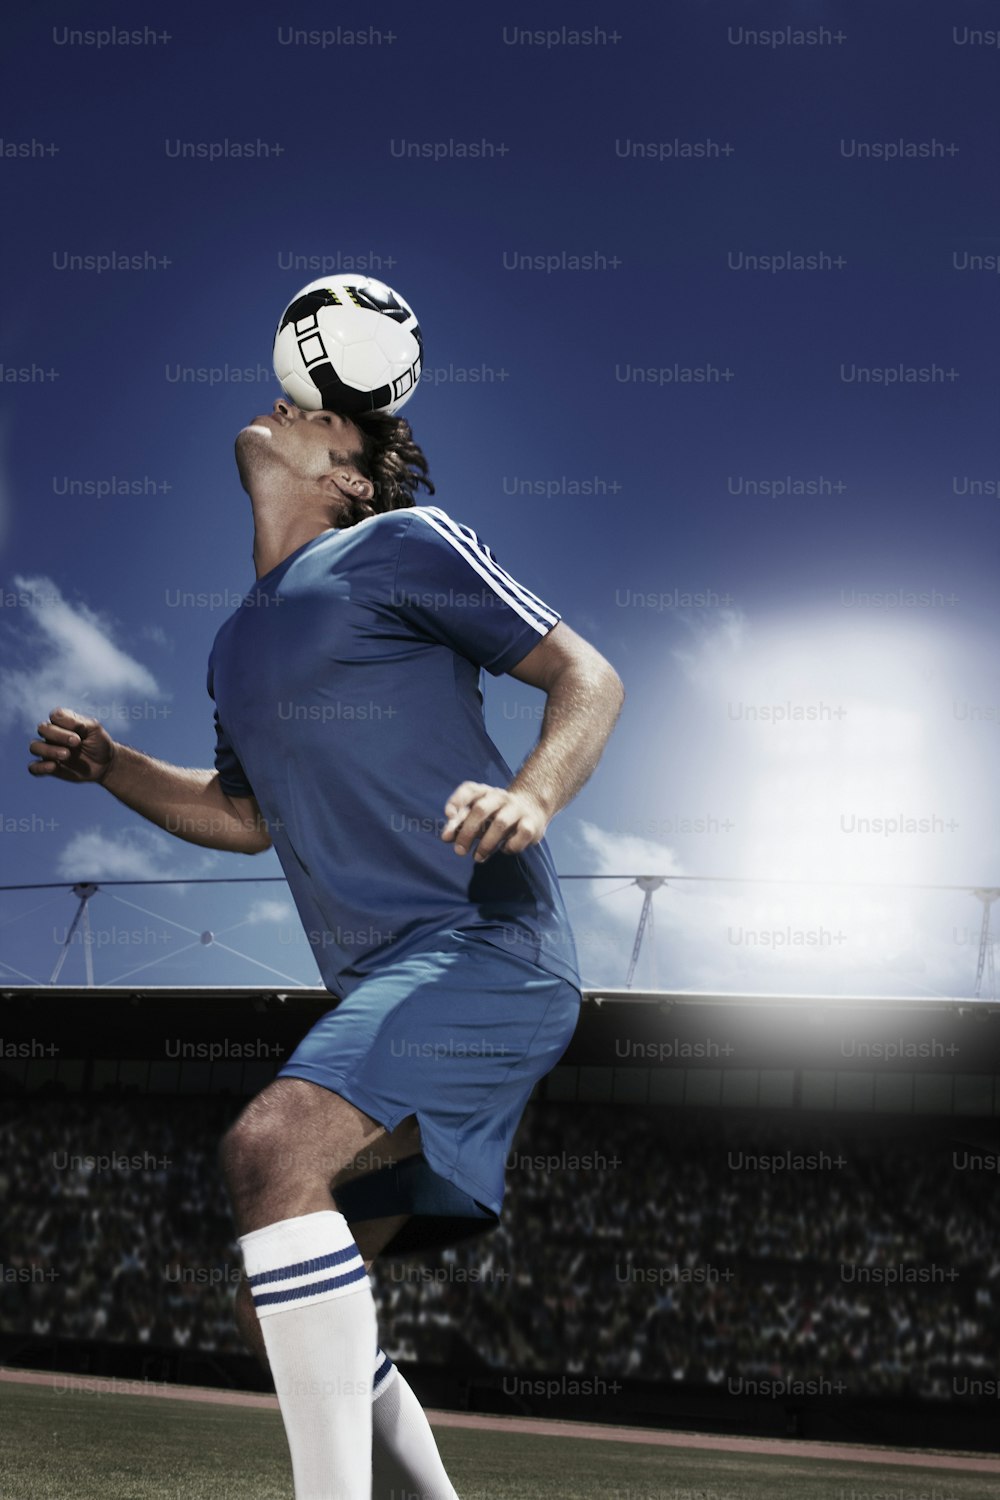 Un homme en uniforme de soccer donnant un coup de pied dans un ballon de soccer